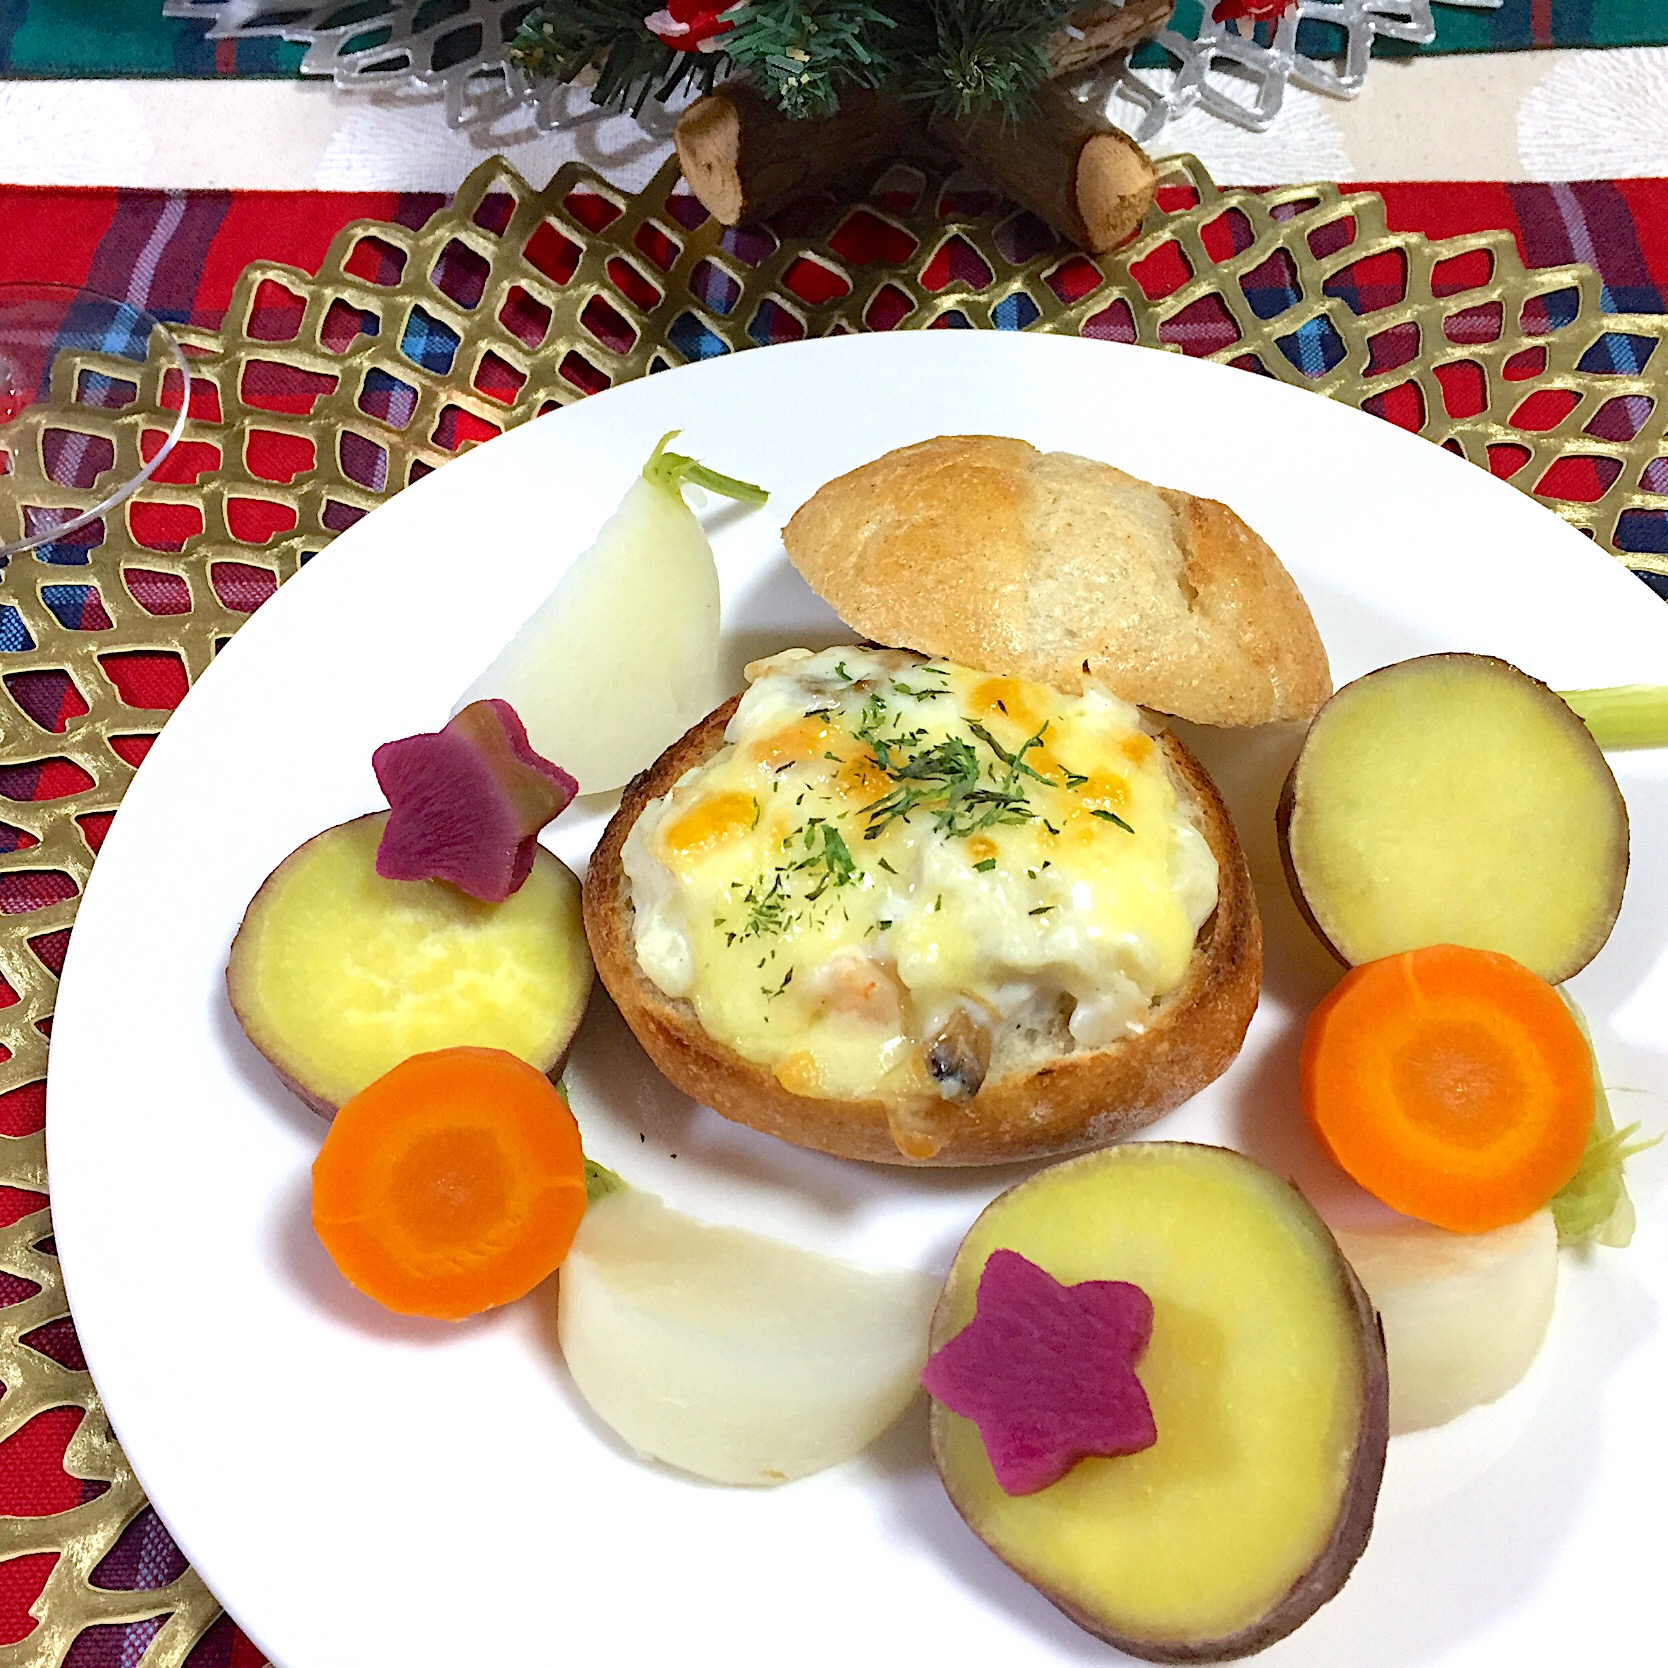 おうちでクリスマスディナー
シーフードグラタンパンと温野菜
ル・オーブンの豆乳プチブールで